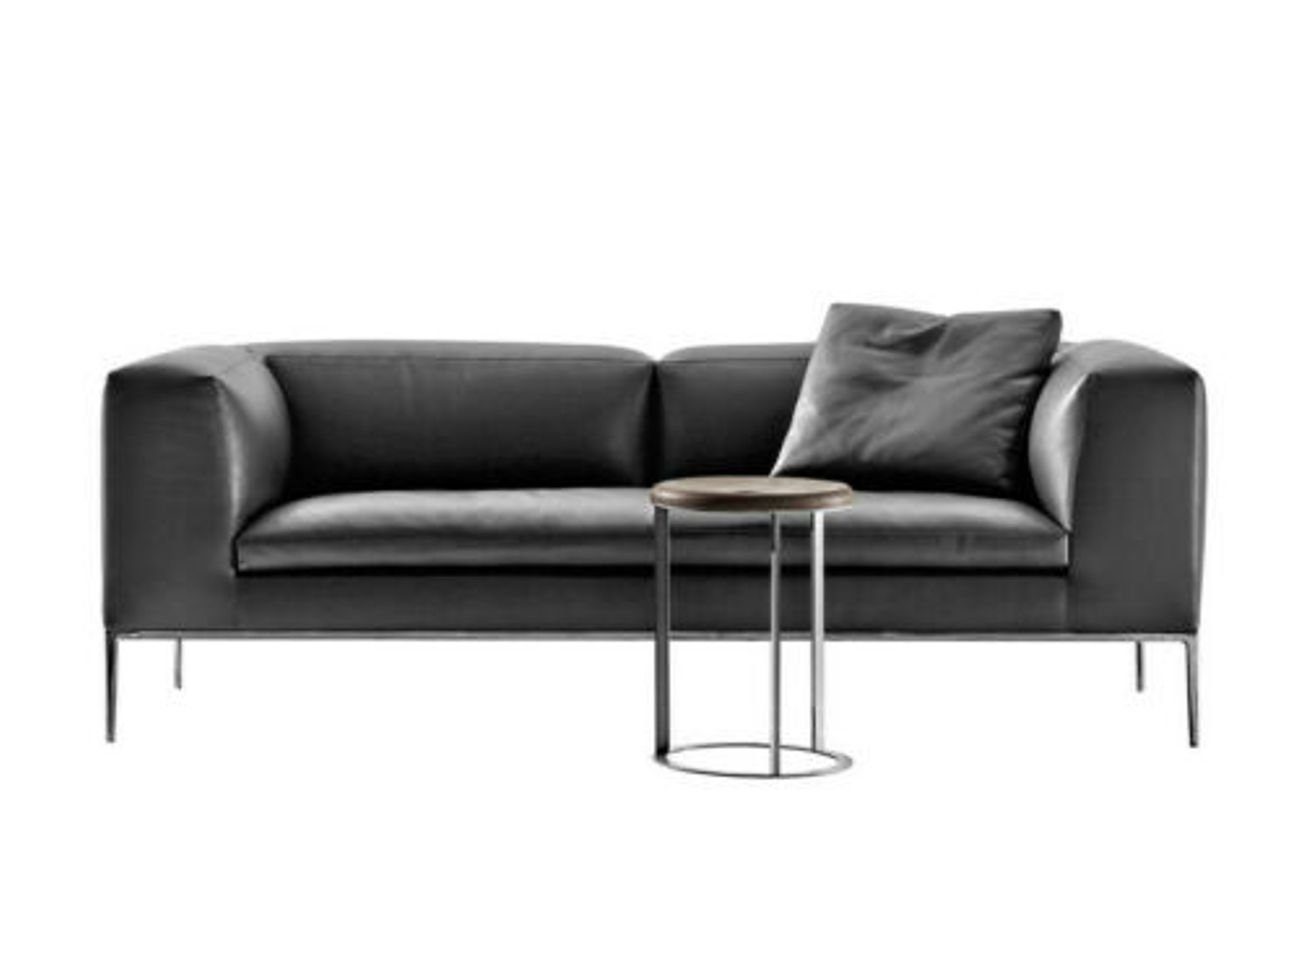 JVmoebel 3-Sitzer Dreisitzer Couch Design Sofa Moderne 3er Sitz Sofas Zimmer Möbel, Made in Europe